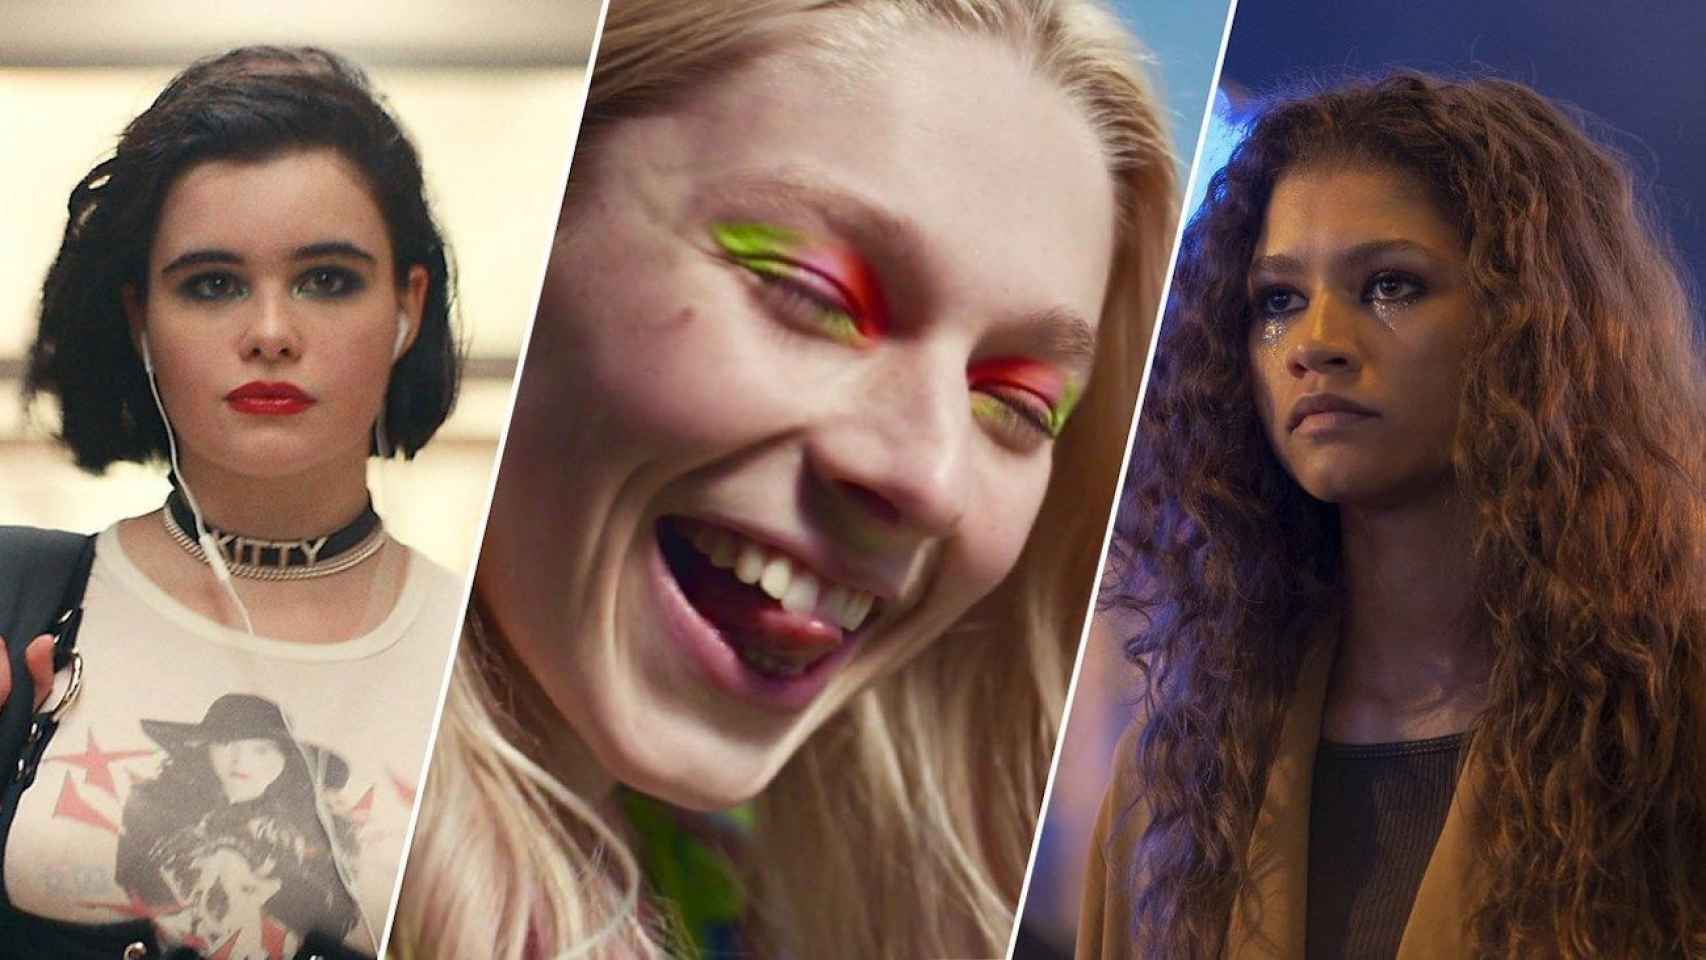 Las protagonistas de la serie 'Euphoria' luciendo 'looks' de maquillaje que se han vuelto virales / HBO